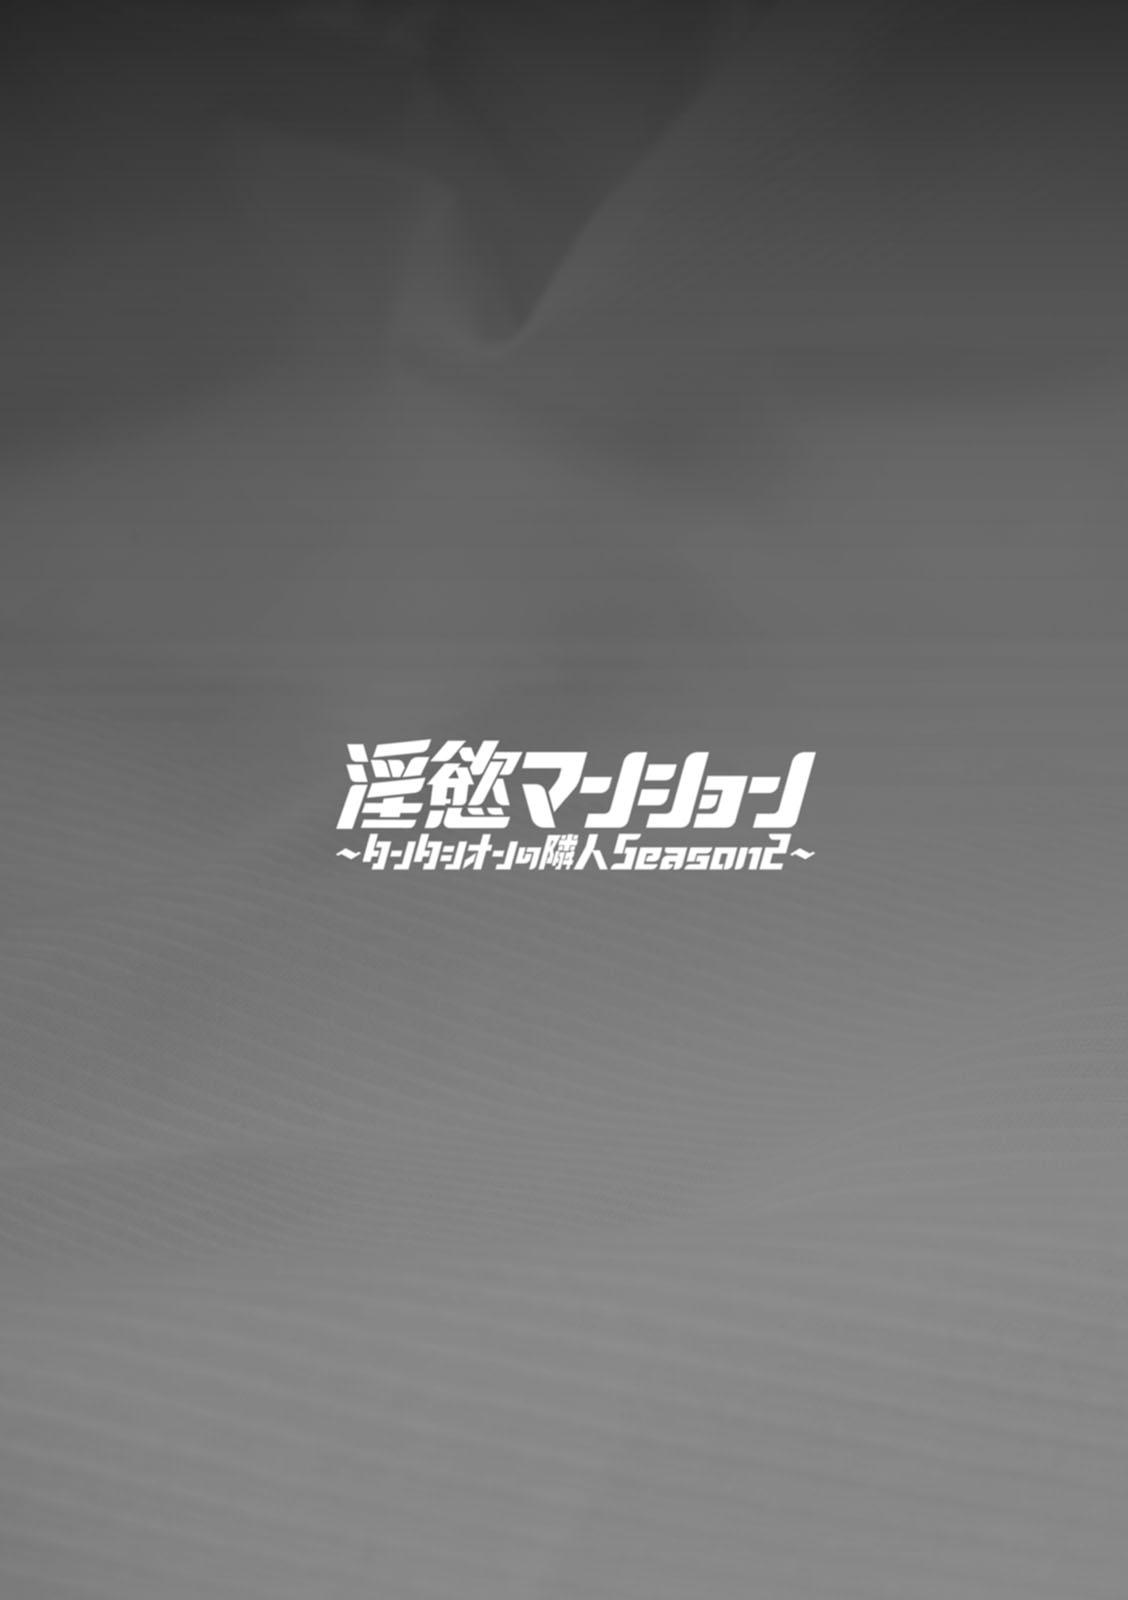 Inyoku Mansion 〜 Tantashion no Rinjin Season 2 148